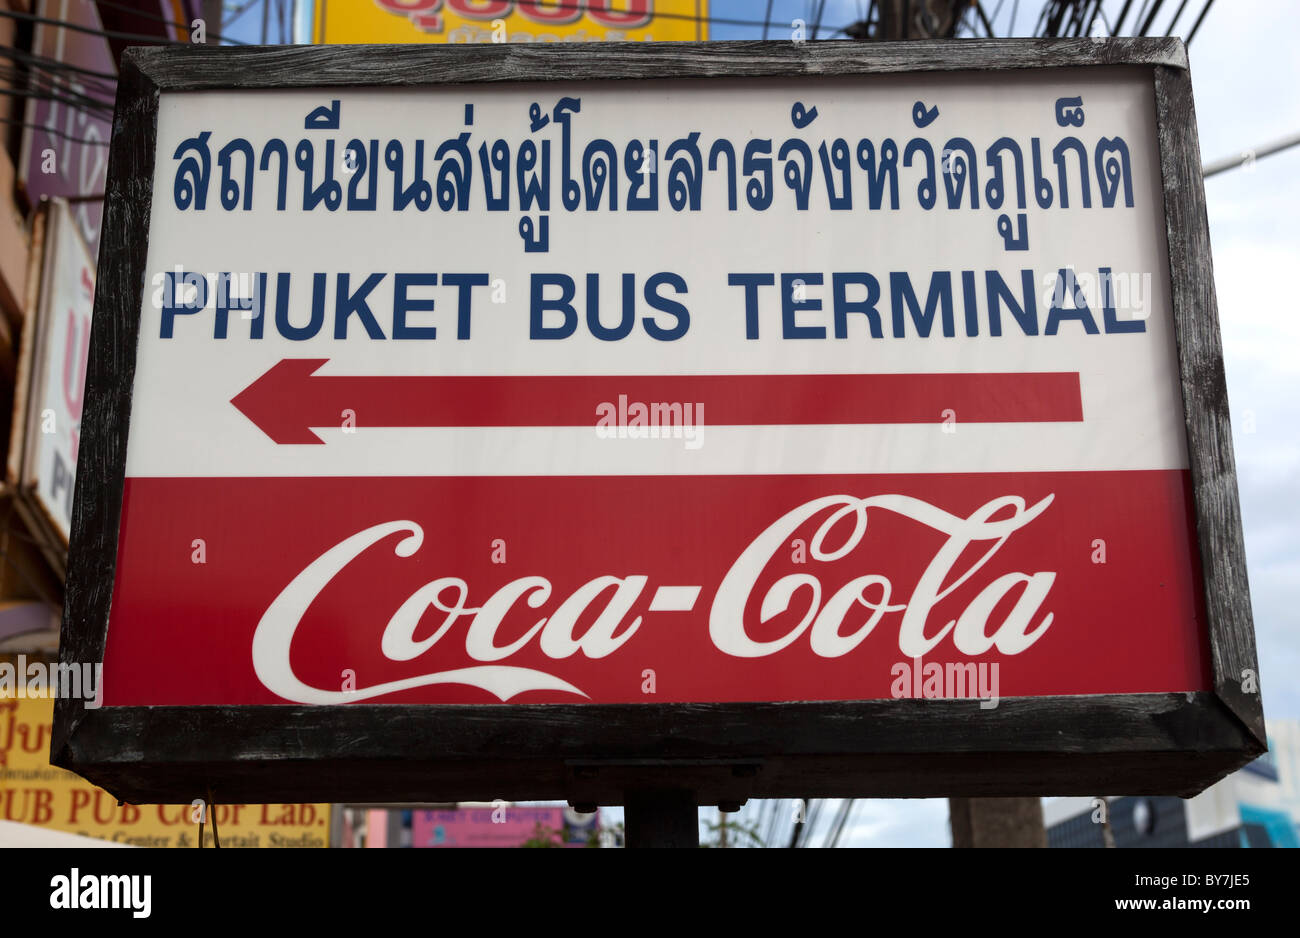 Phuket a lunga distanza terminale di autobus della citta' di Phuket Thailandia Foto Stock